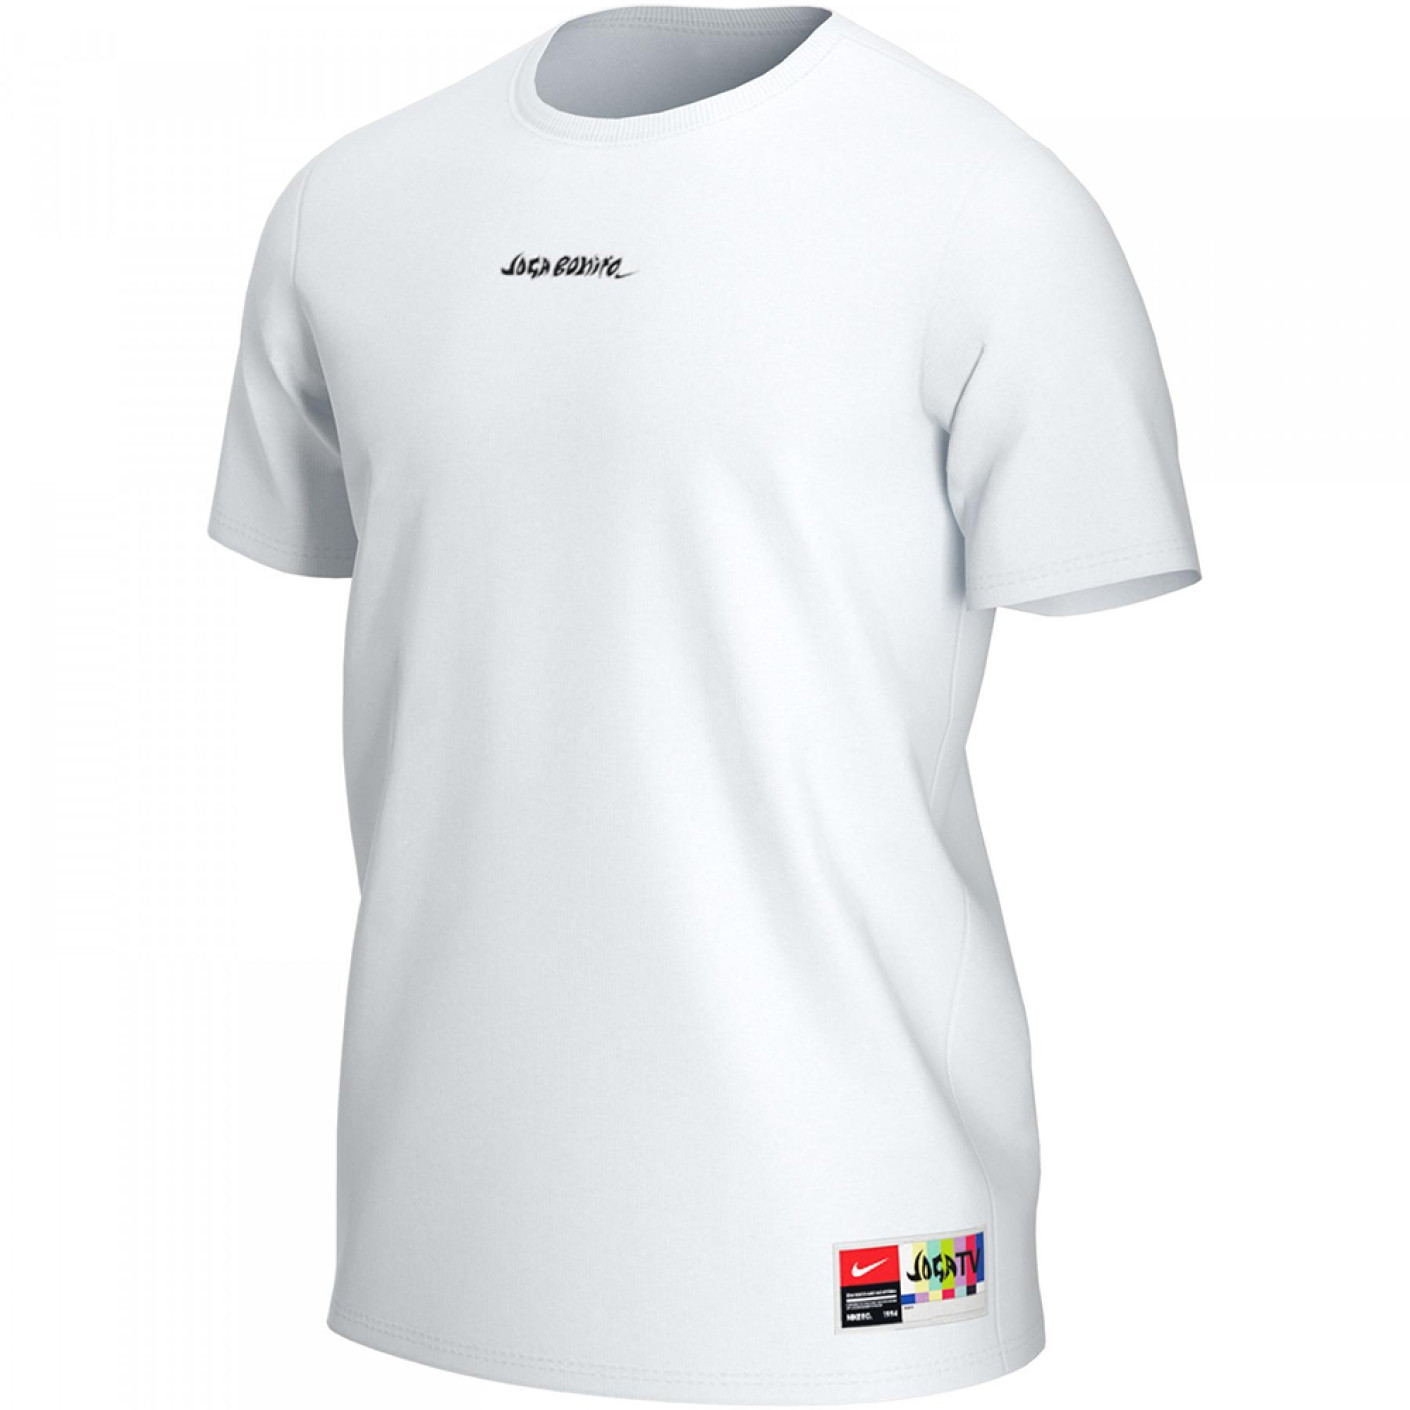 Nike F.C. T-Shirt Joga Bonito Wit